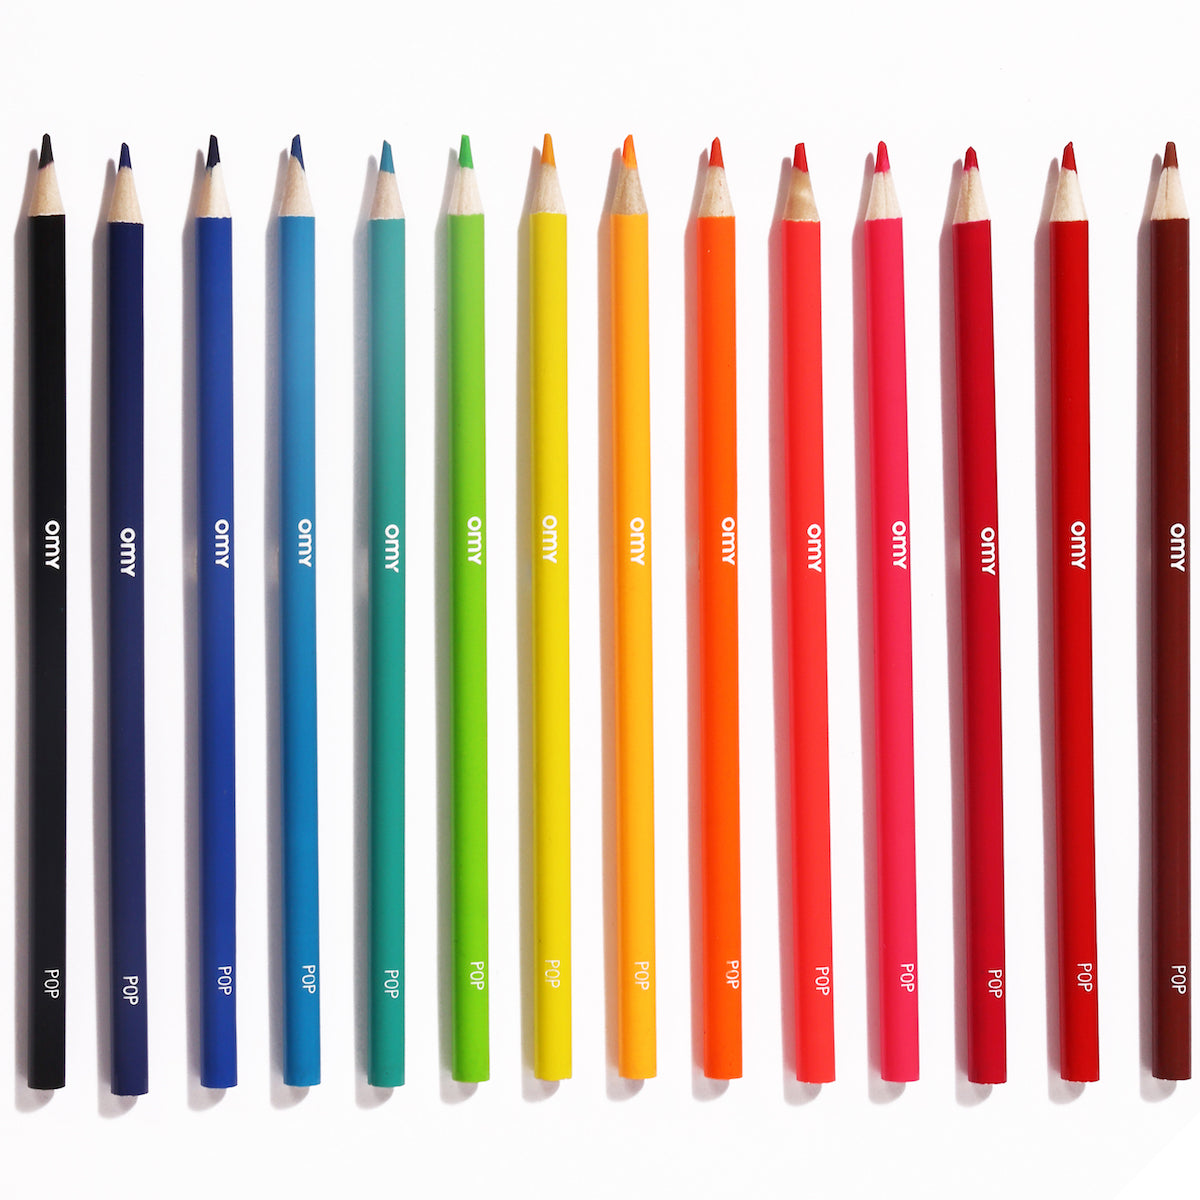 Met deze OMY kleurpotloden maakt jouw kindje de mooiste tekeningen! In deze set met potloden zitten maar liefst 16 mooie kleuren: 10 neon kleuren en 6 glimmende kleuren. VanZus.